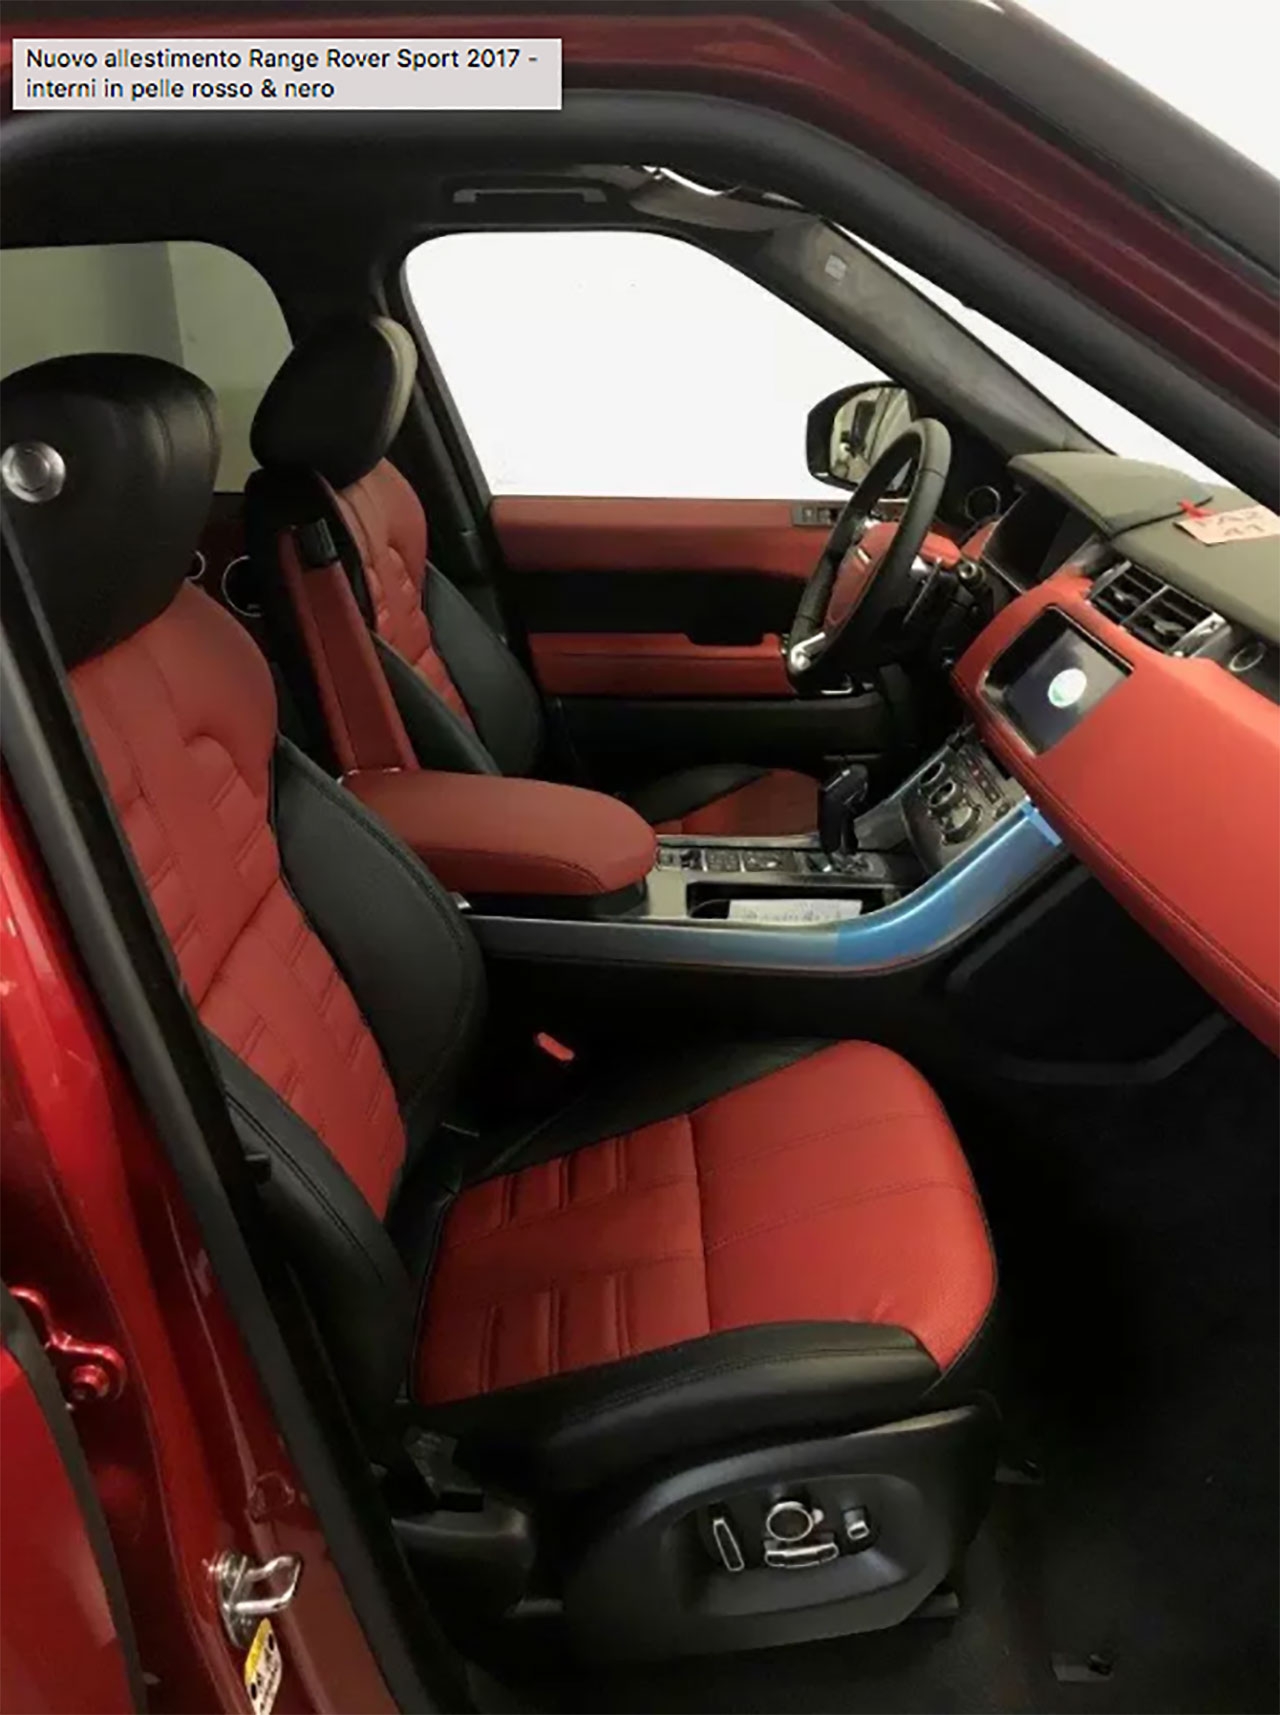 Nuovo allestimento Range Rover Sport 2017